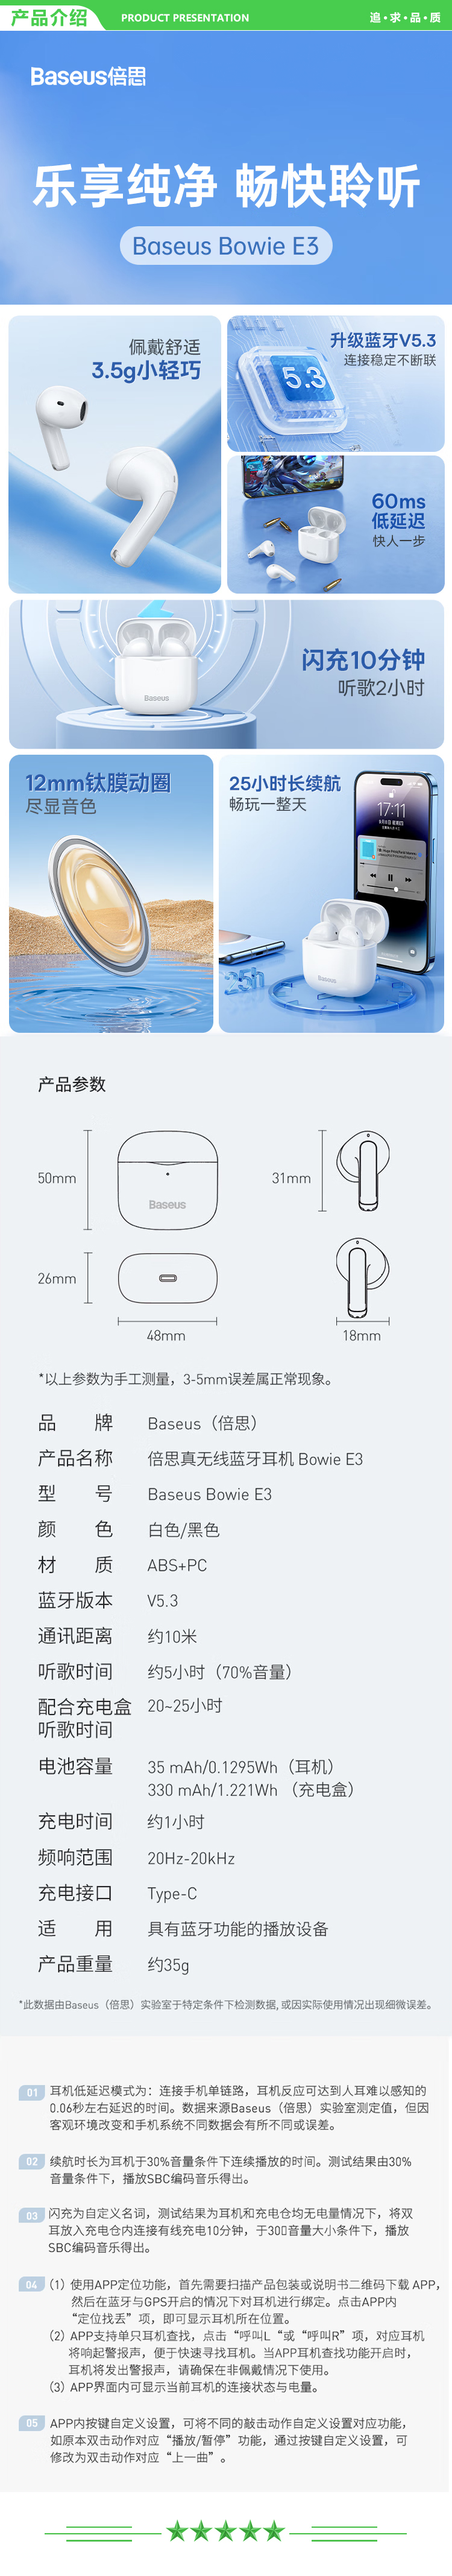 倍思 Baseus E3 黑色 真无线蓝牙耳机半入耳式游戏吃鸡低延迟音乐降噪运动适用于苹果华为vivo小米荣耀oppo.jpg